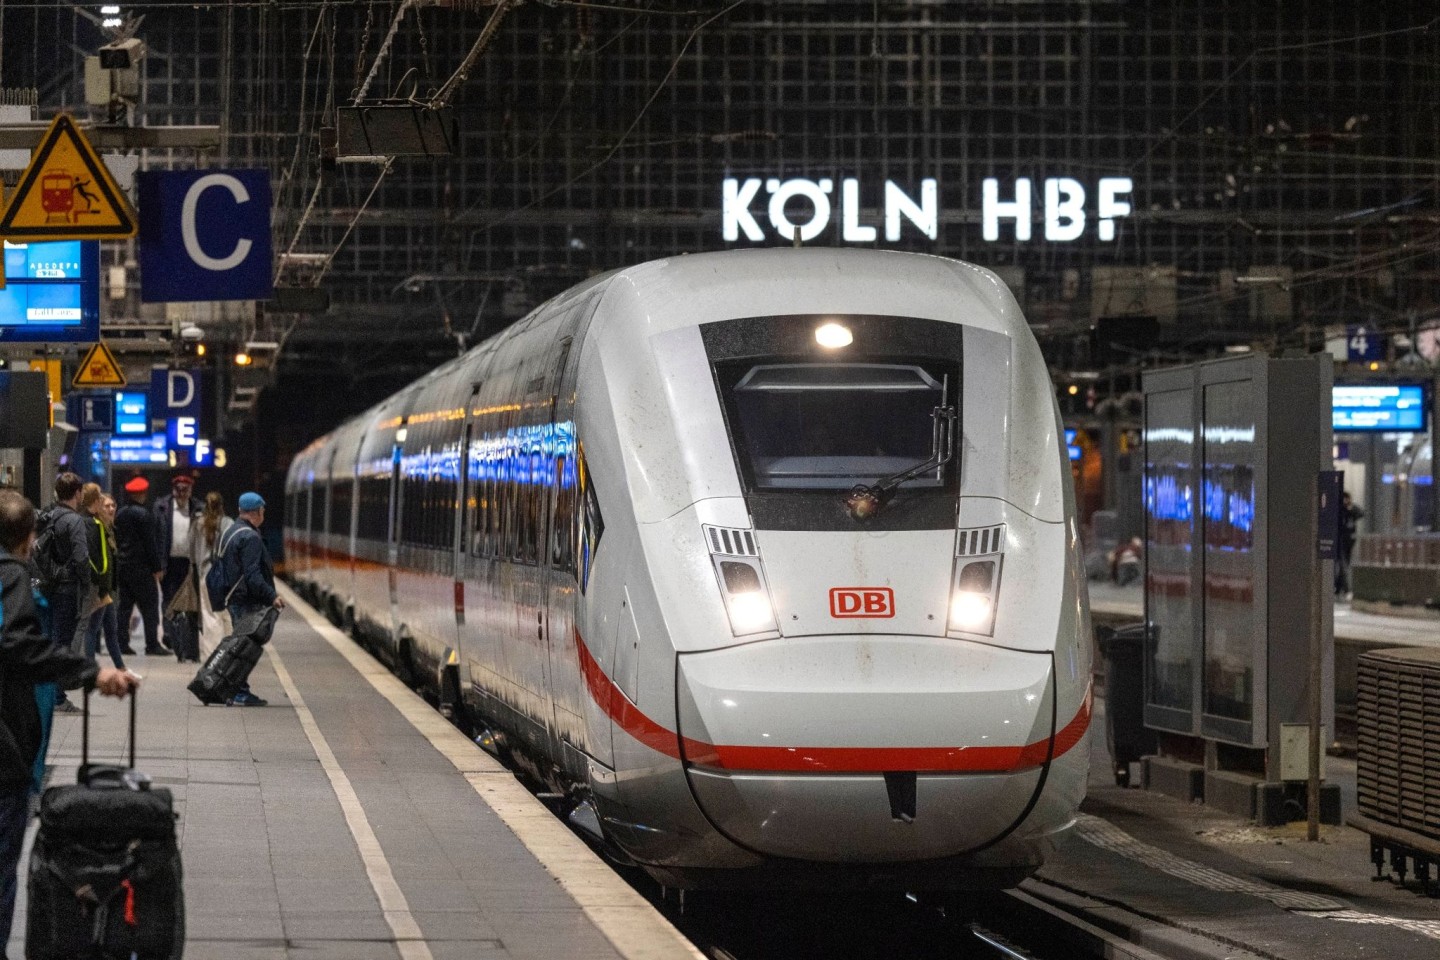 Wegen Bauarbeiten kommt es am Kölner Hauptbahnhof zu starken Einschränkungen für Reisende.